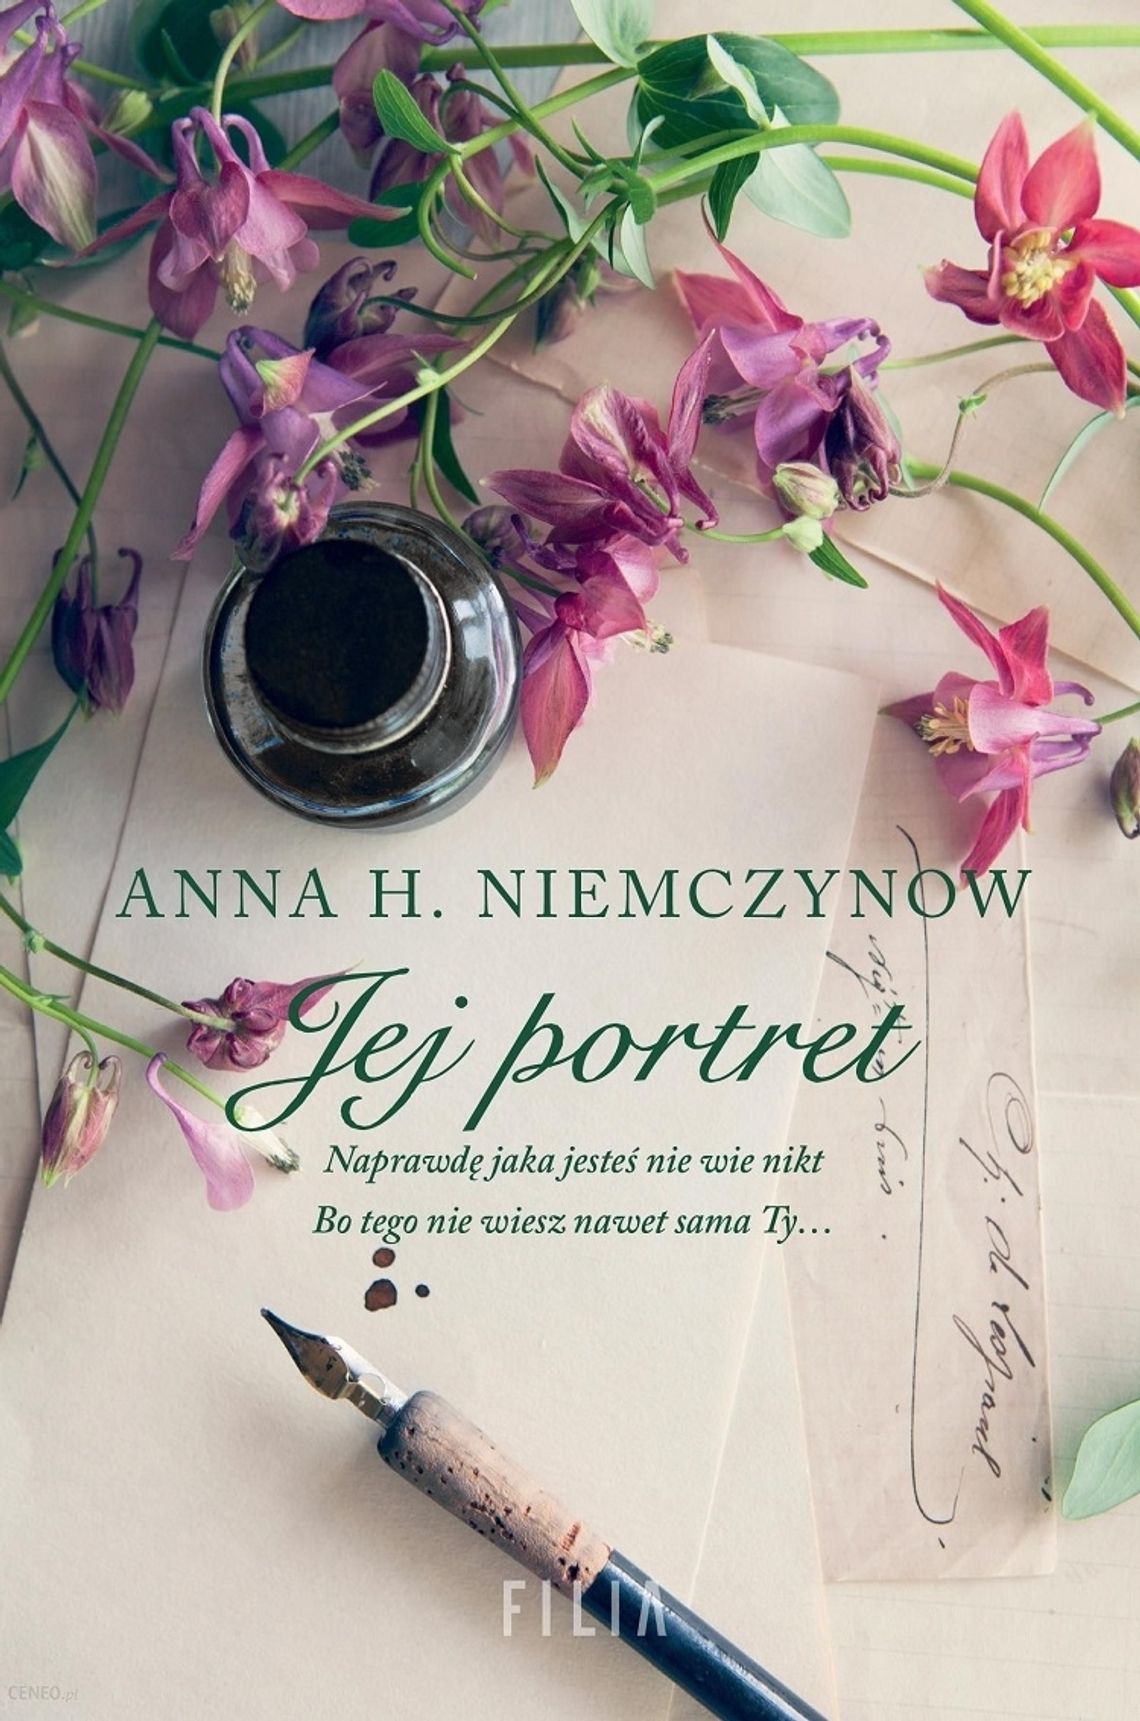 ANNA H. NIEMCZYNOW "Jej portret"; wyd. FILIA